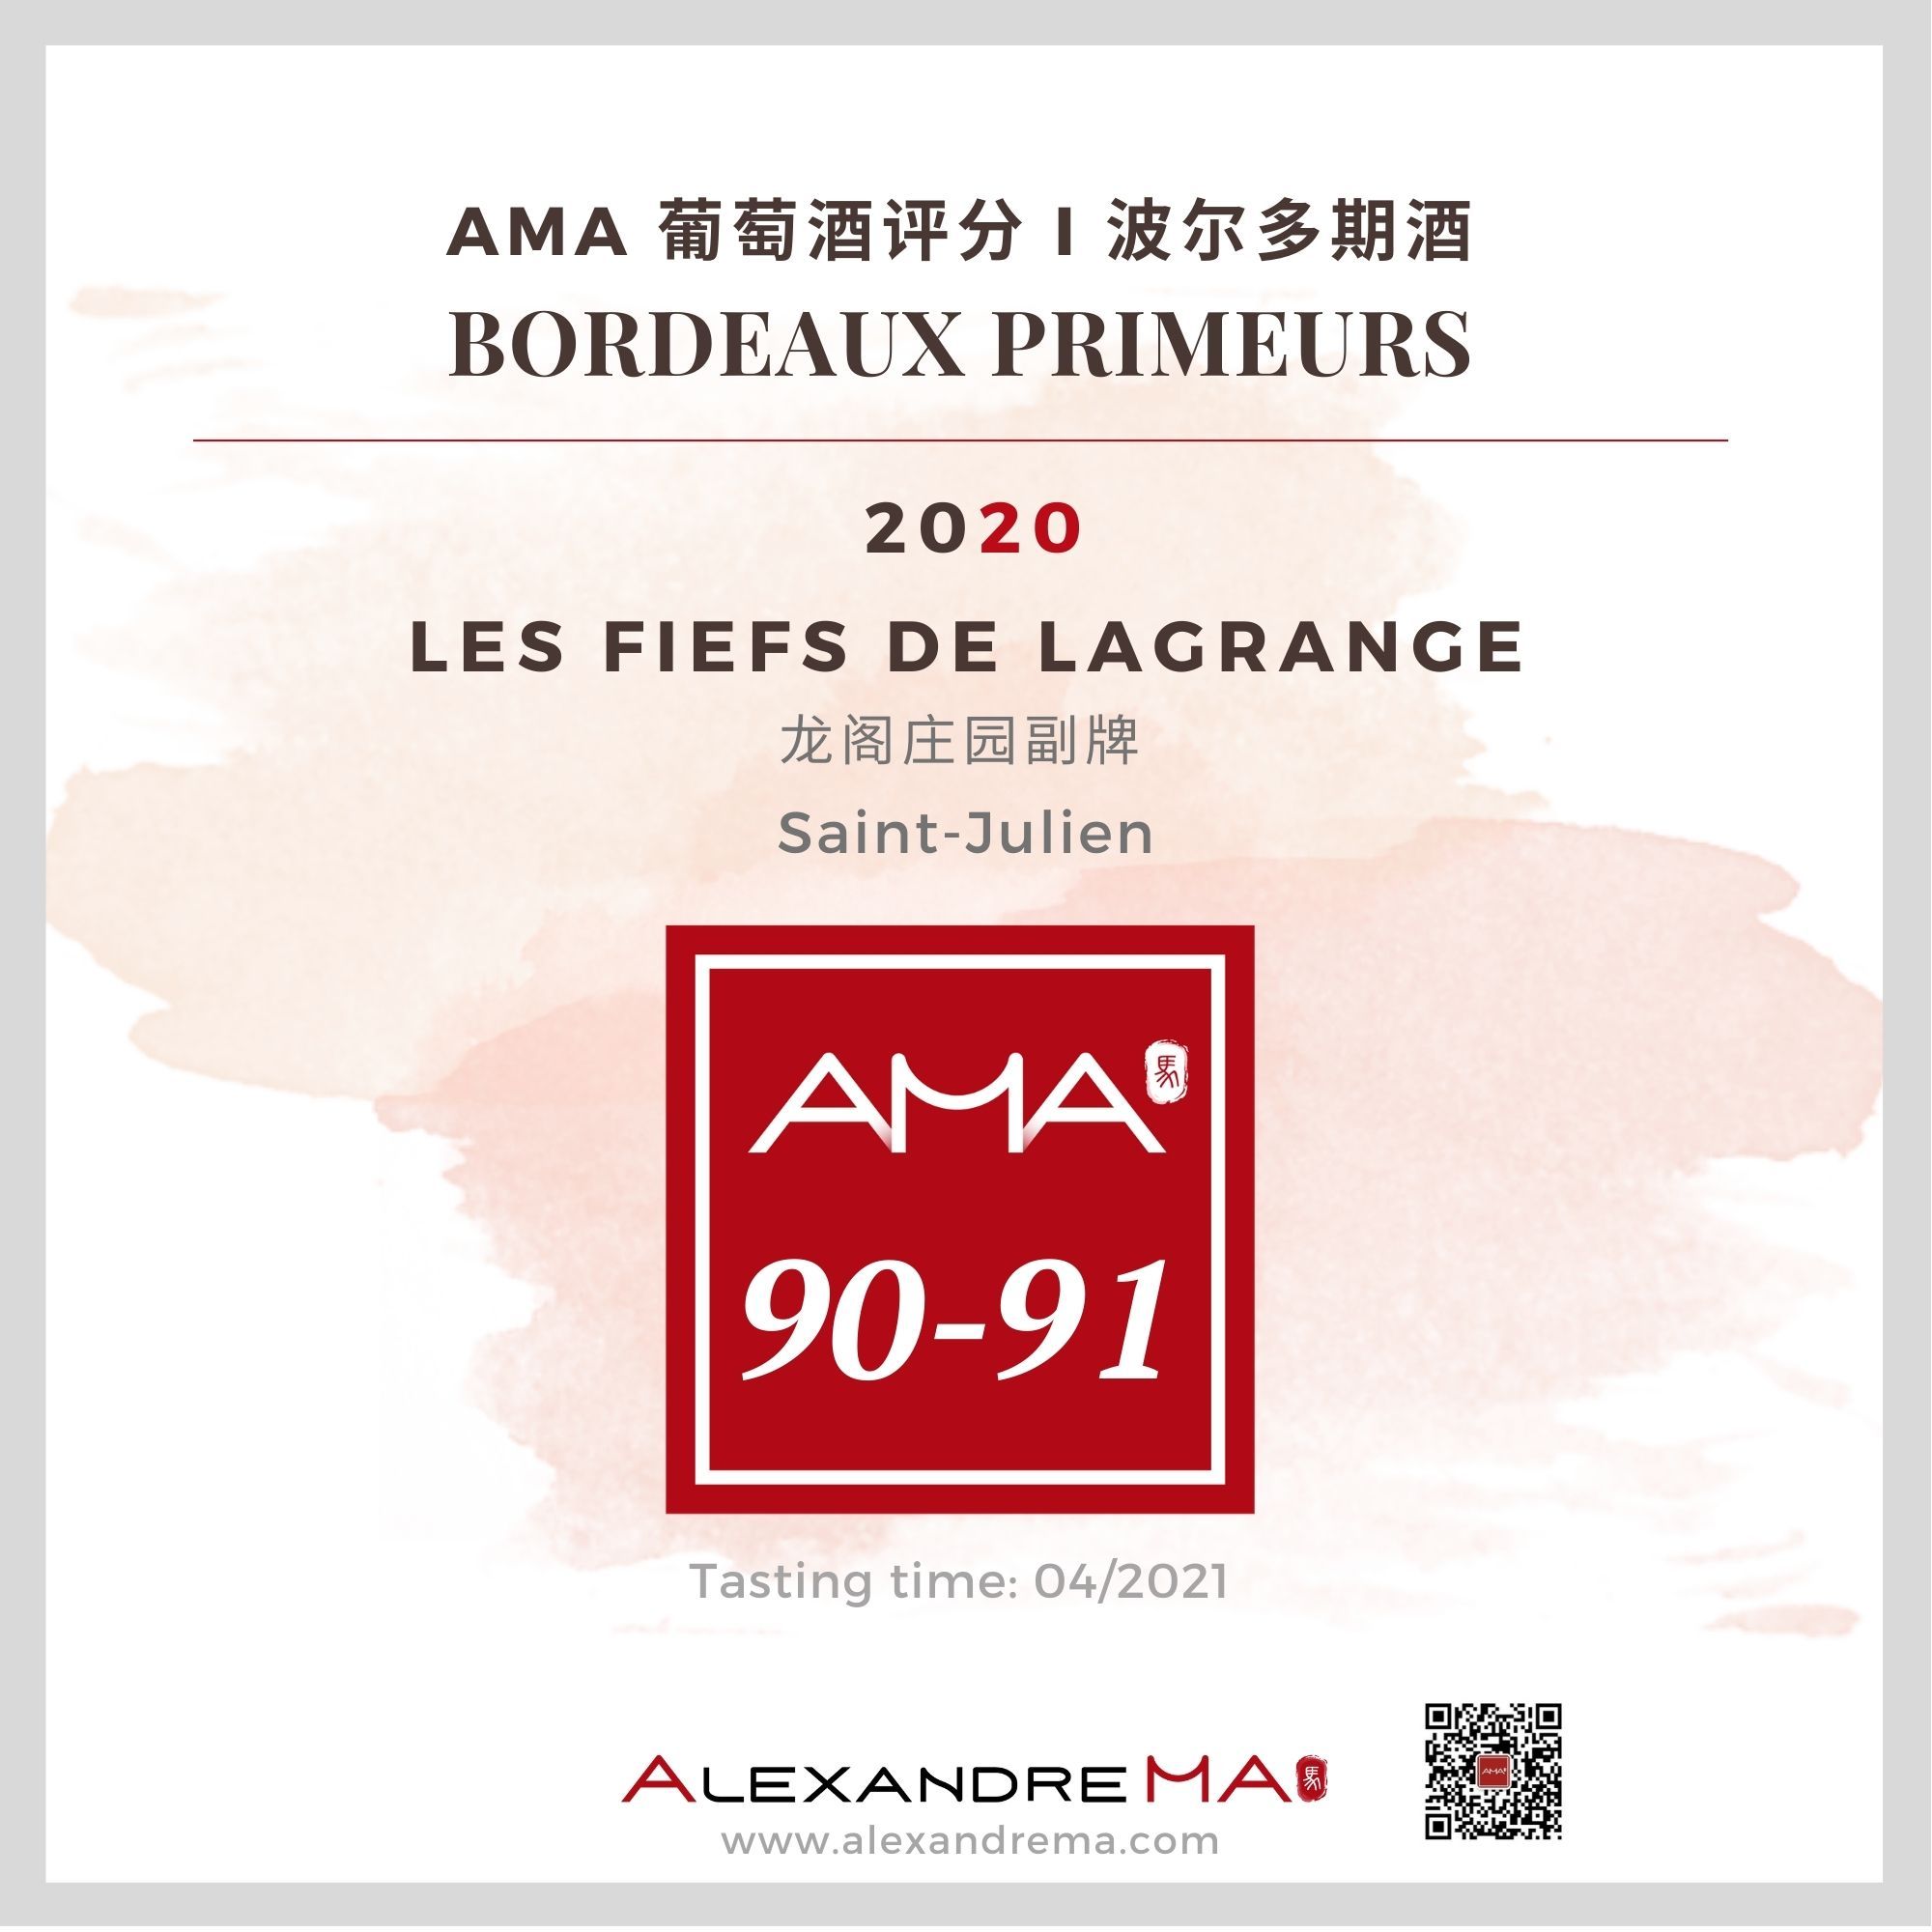 Les Fiefs de Lagrange 2020 - Alexandre MA